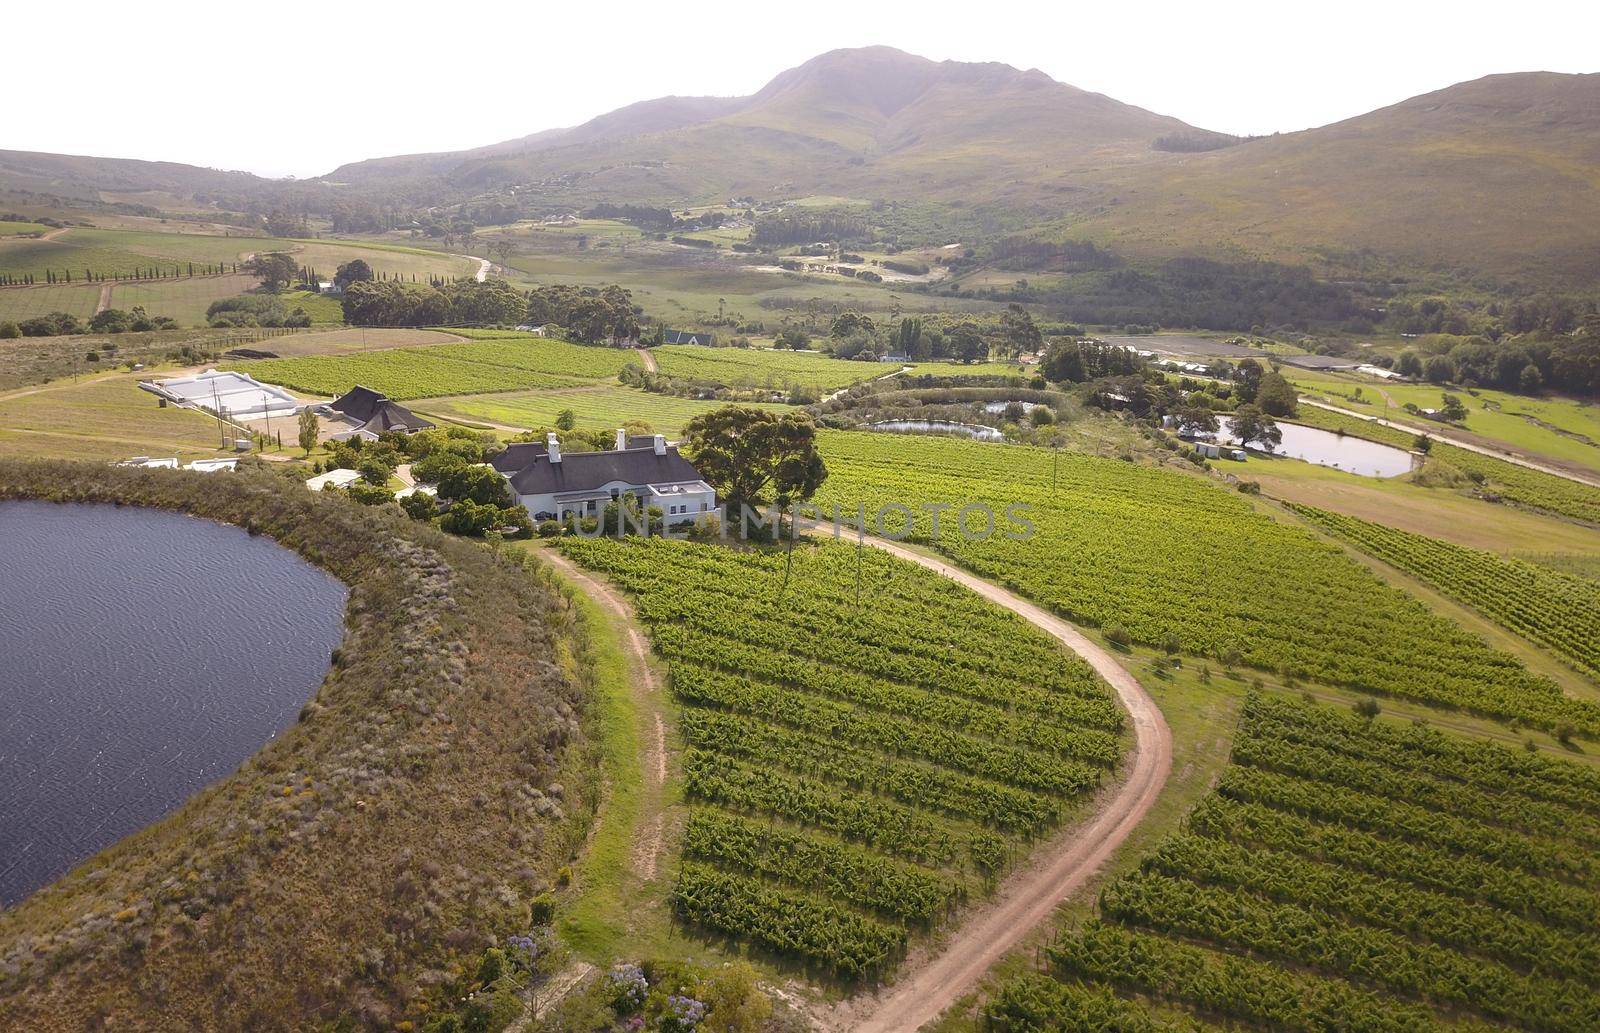 Aerial over vineyard in beautiful valley